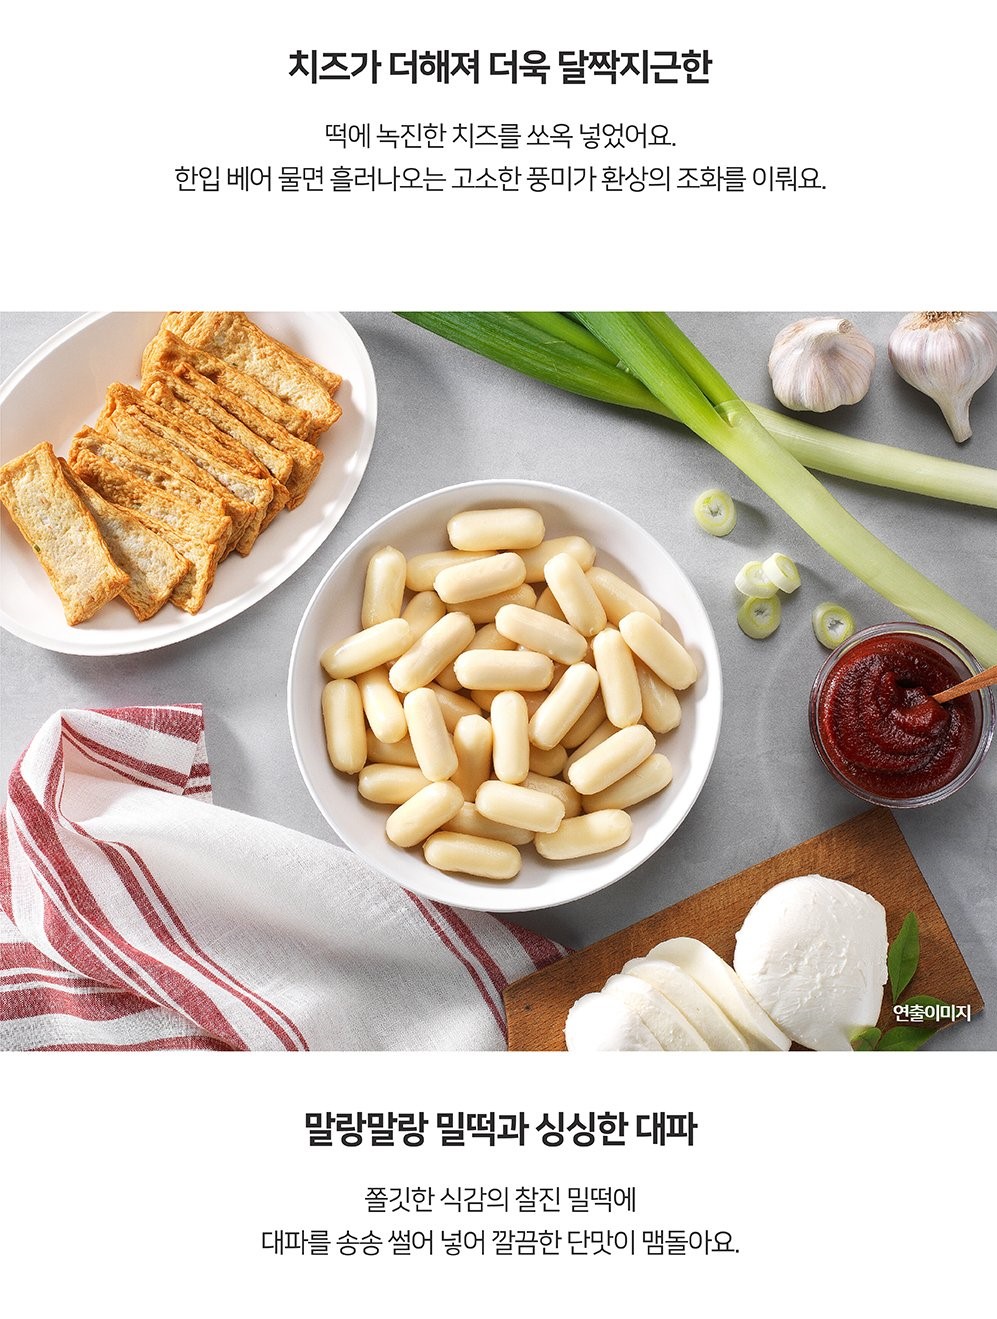 韓國食品-[박막례] 치즈떡볶이 485g